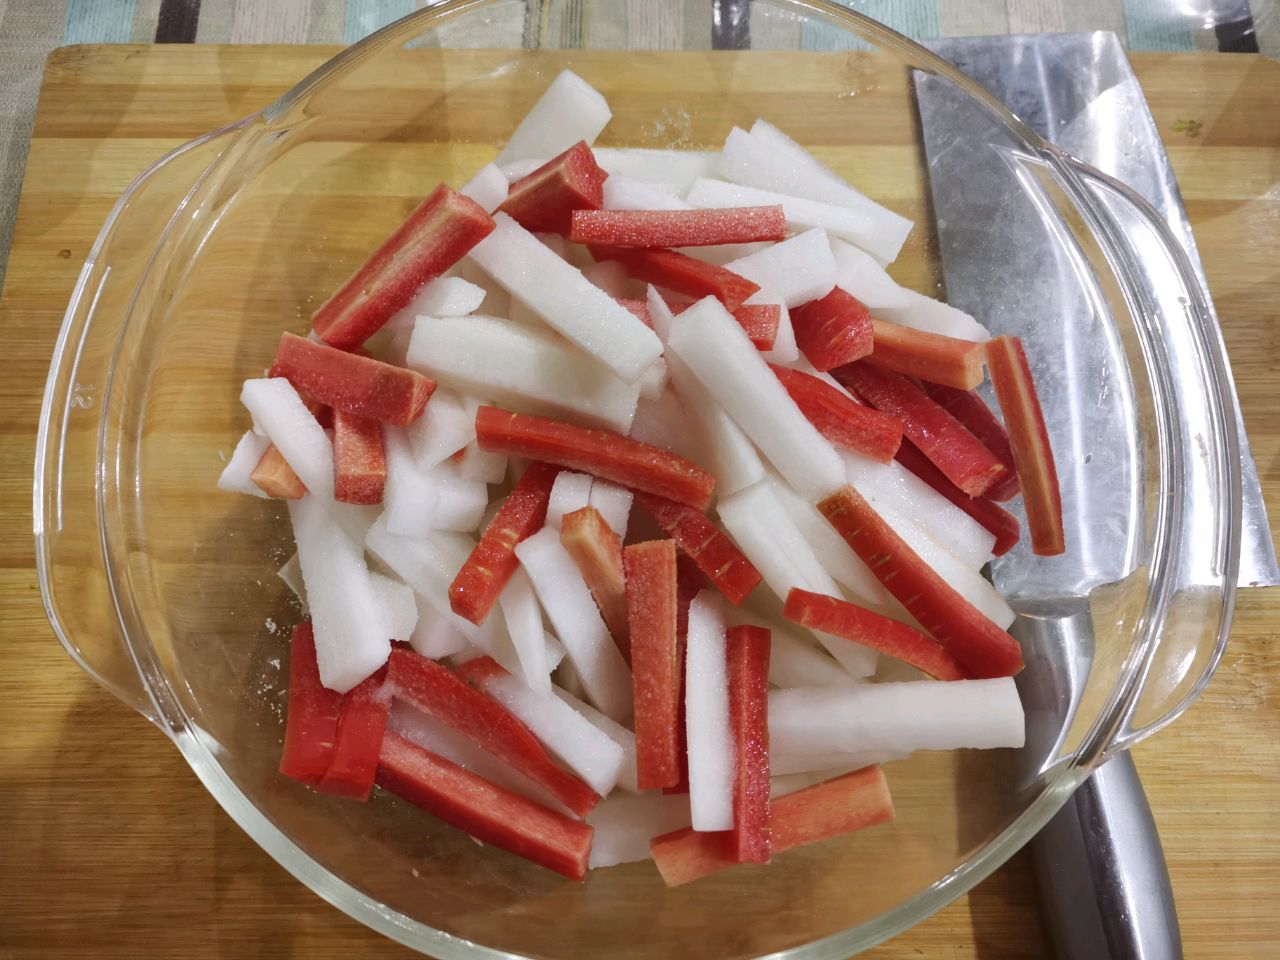 酸萝卜制作方法,四川泡菜酸萝卜 - 伤感说说吧